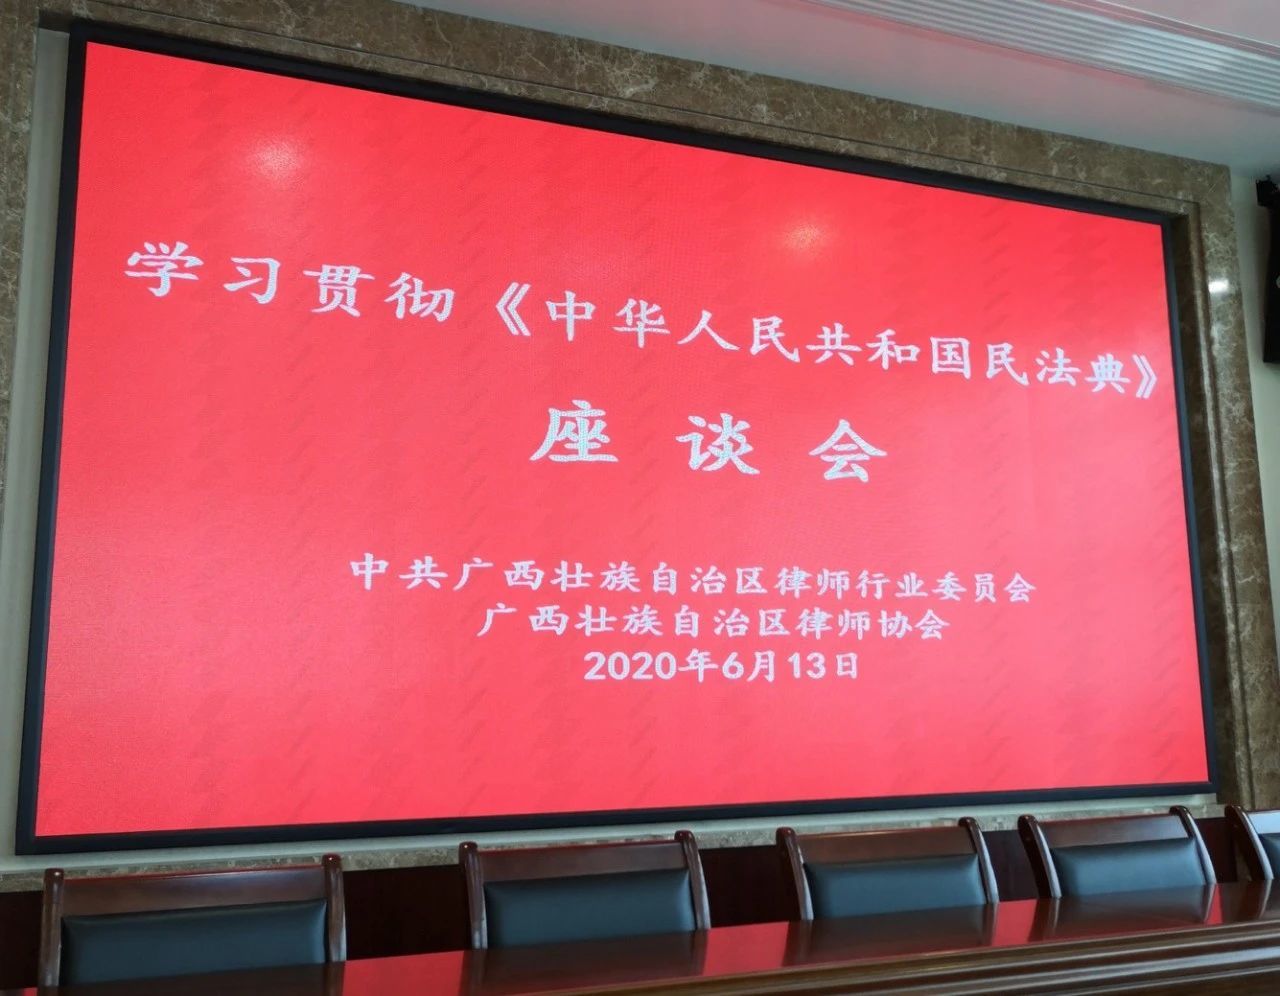 【三力时讯】我所主任彭荣汉律师参加广西区律协组织的学习贯彻《中华人民共和国民法典》座谈会